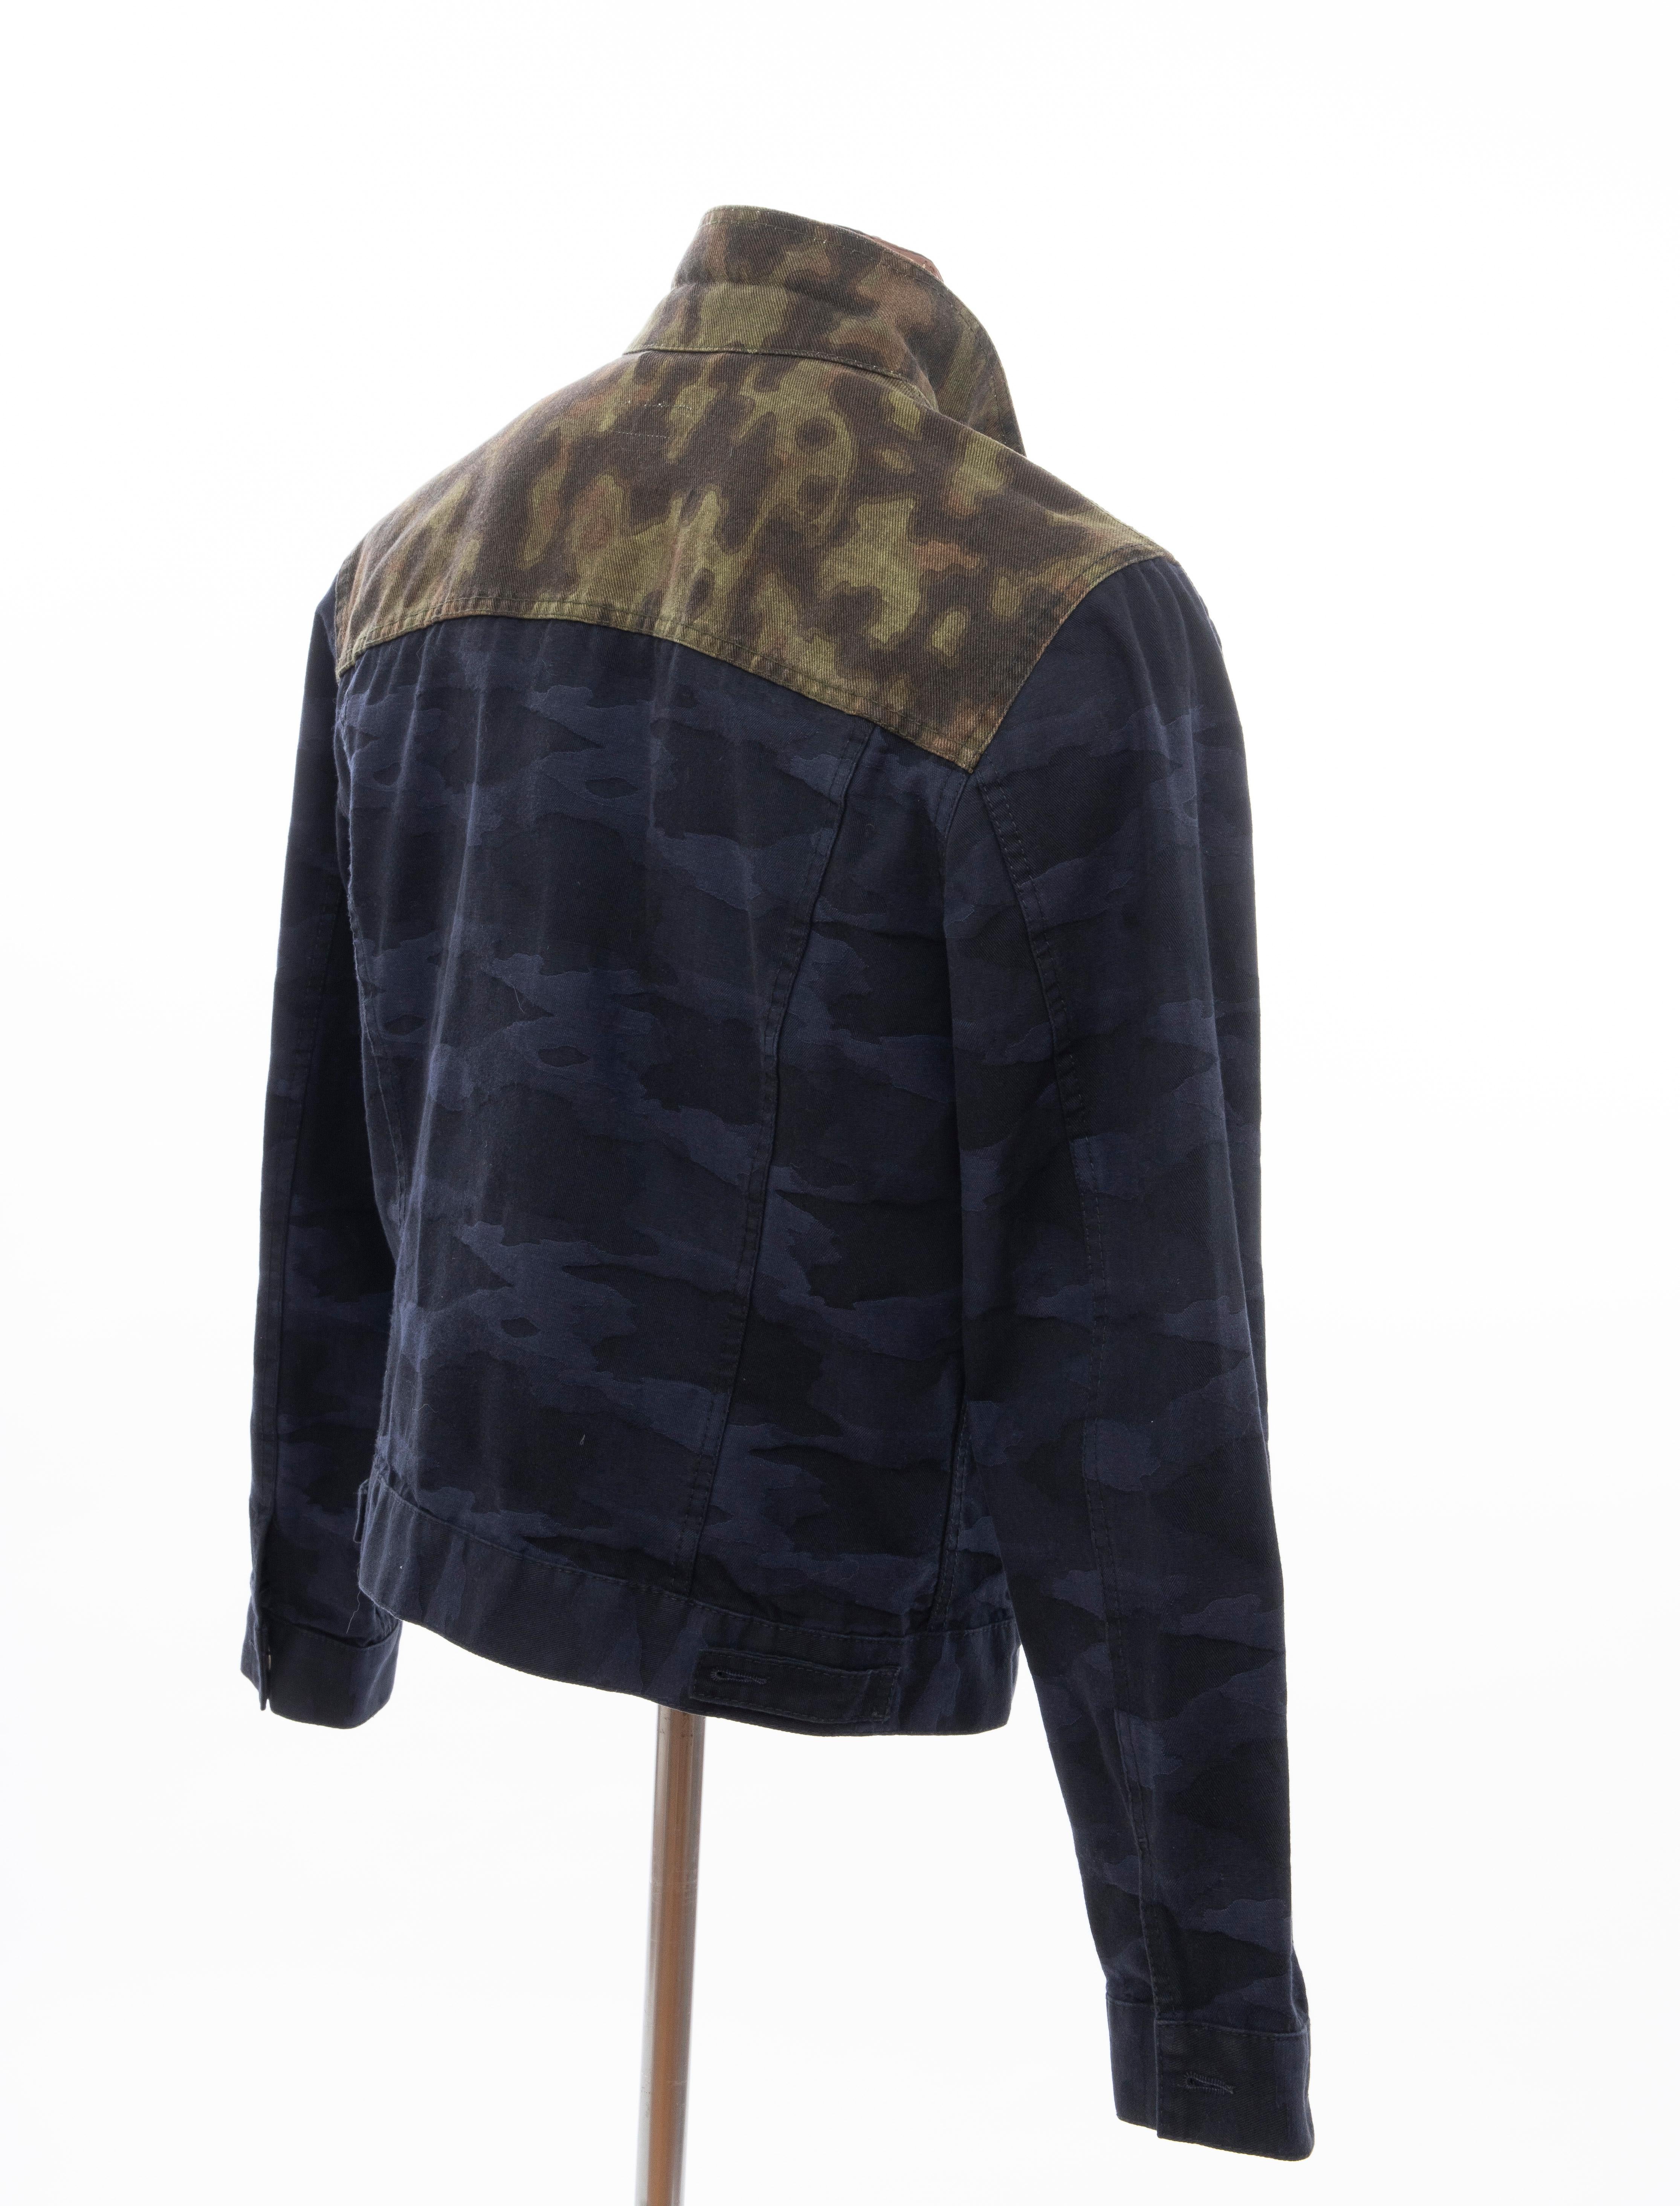 Dries van Noten Runway Men's Cotton Camouflage Chore Jacket, Spring 2013 2